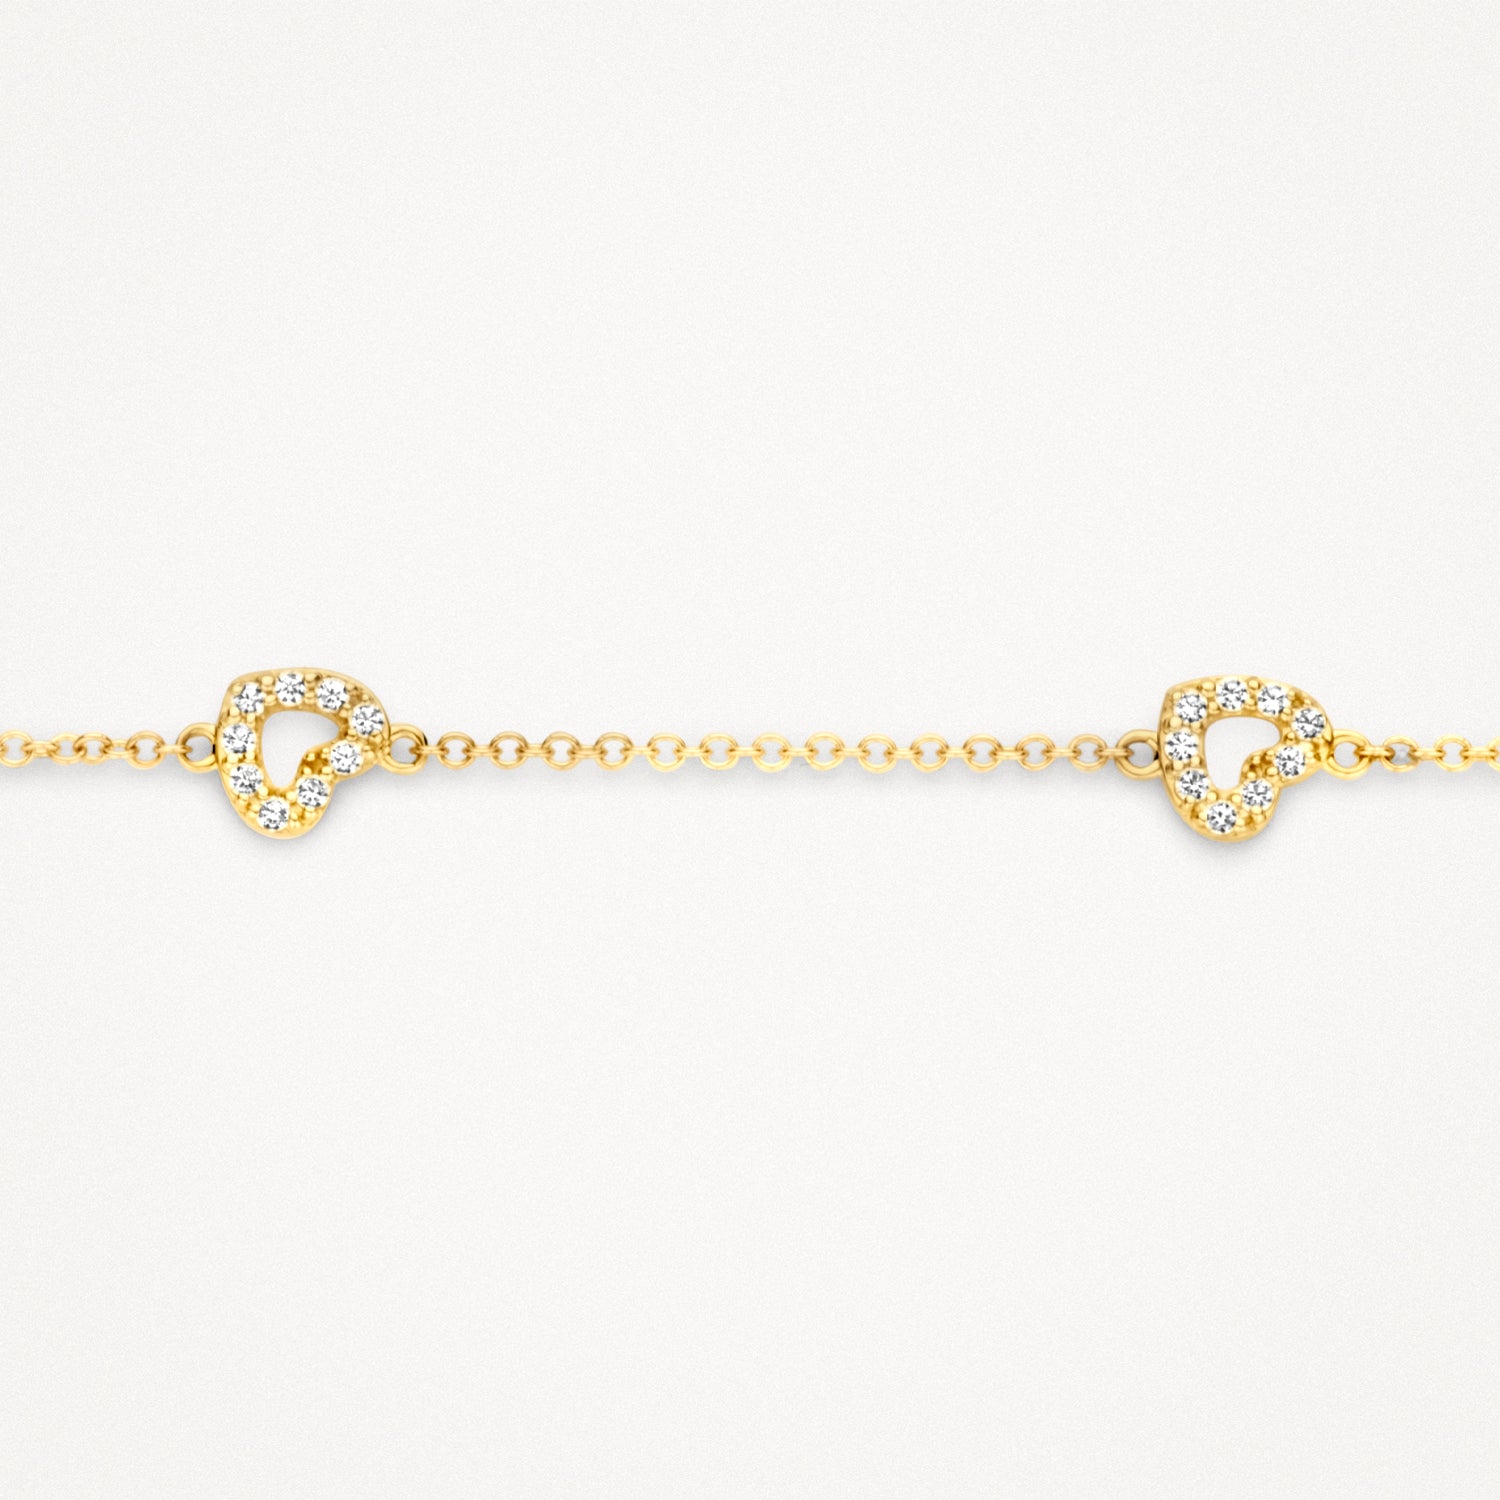 Bracelet 2211YZI - 14k Yellow gold with zirconia